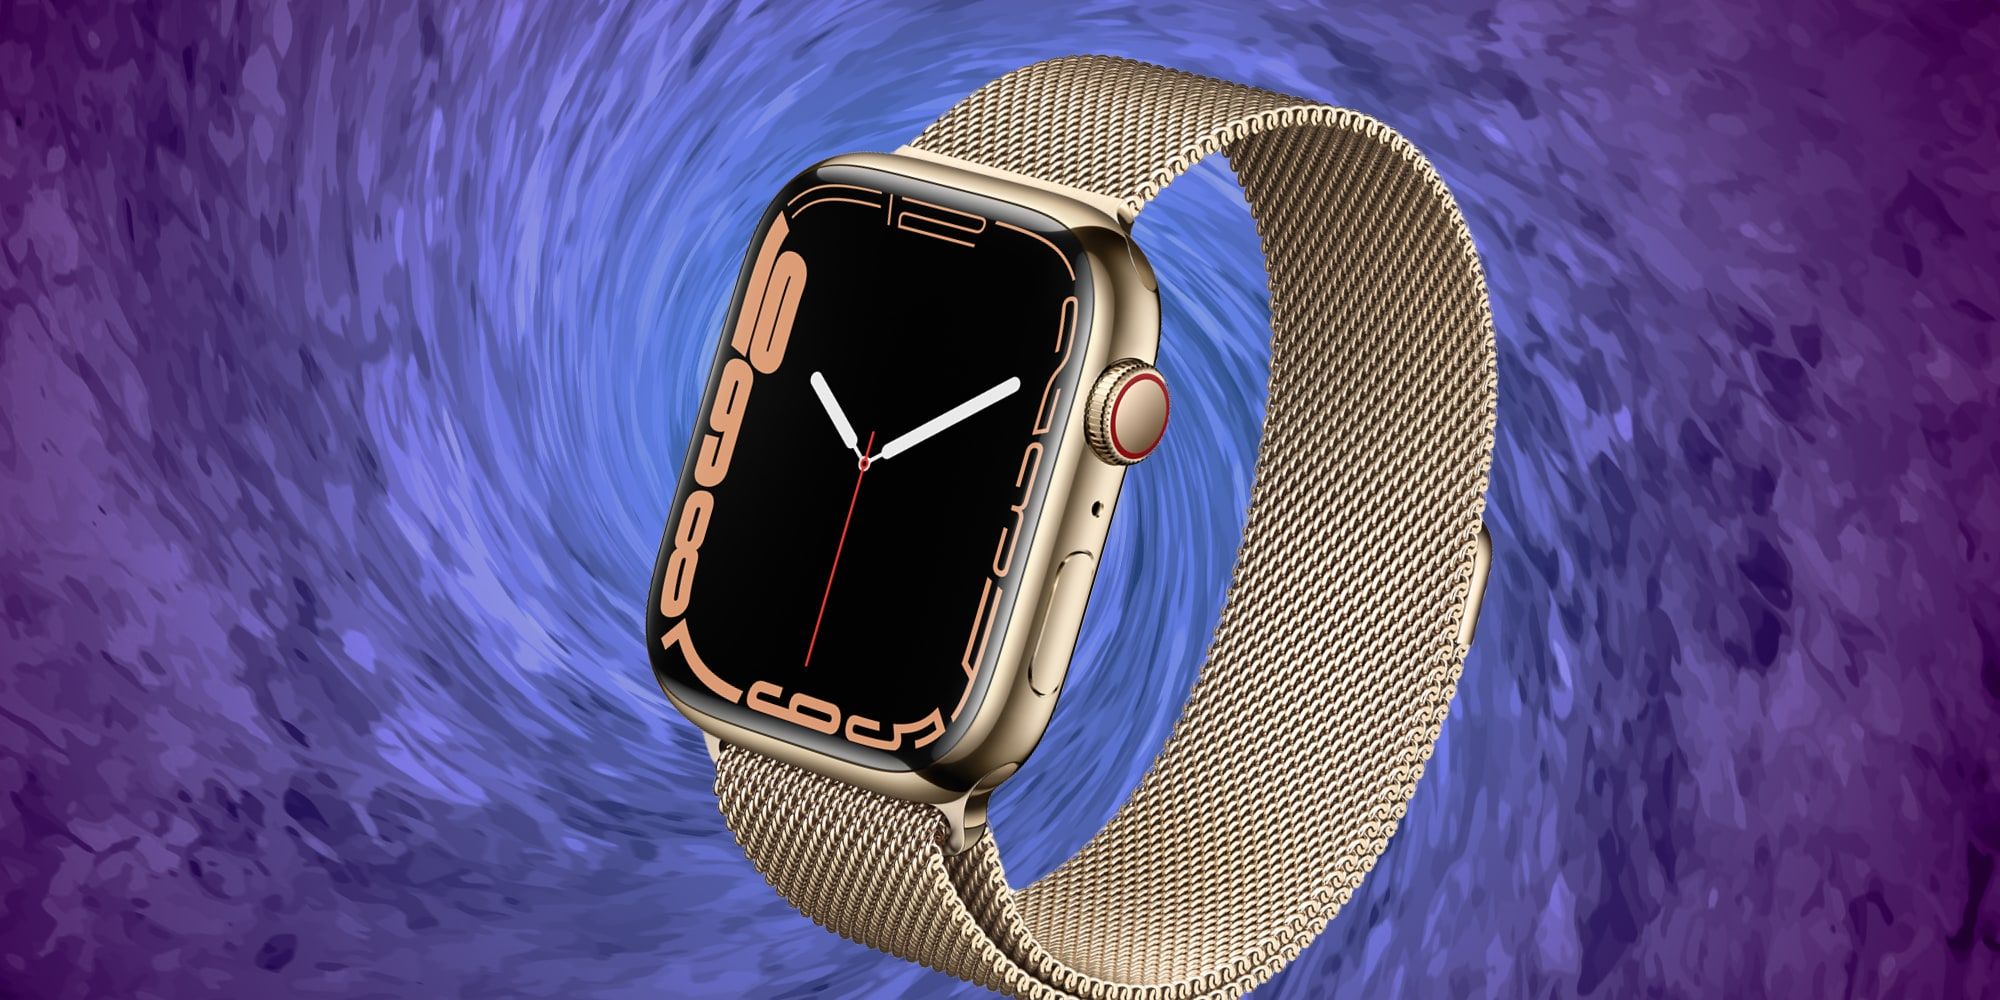 Aquí se explica cómo cambiar la hora en un Apple Watch